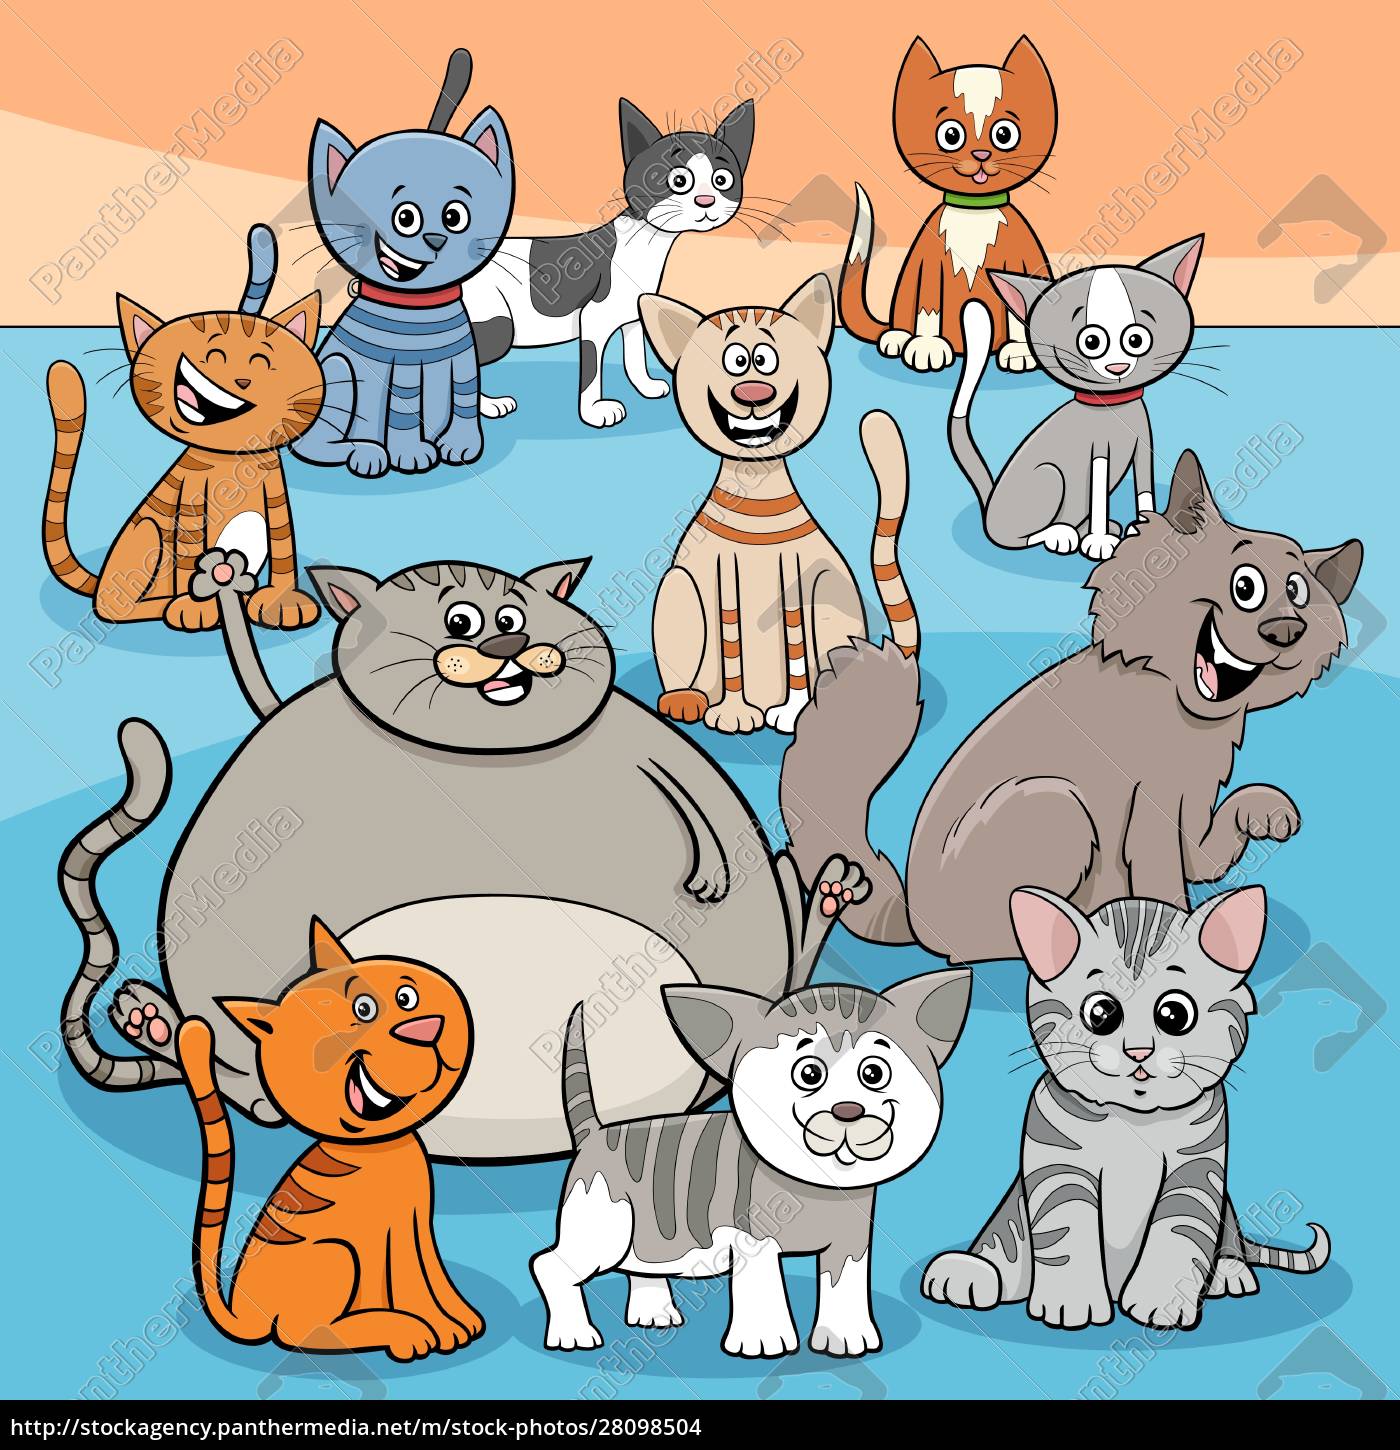 Ilustração De Desenho Animado De Gatos E Clipart. Foto de Stock - Imagem de  animais, cômico: 284216776